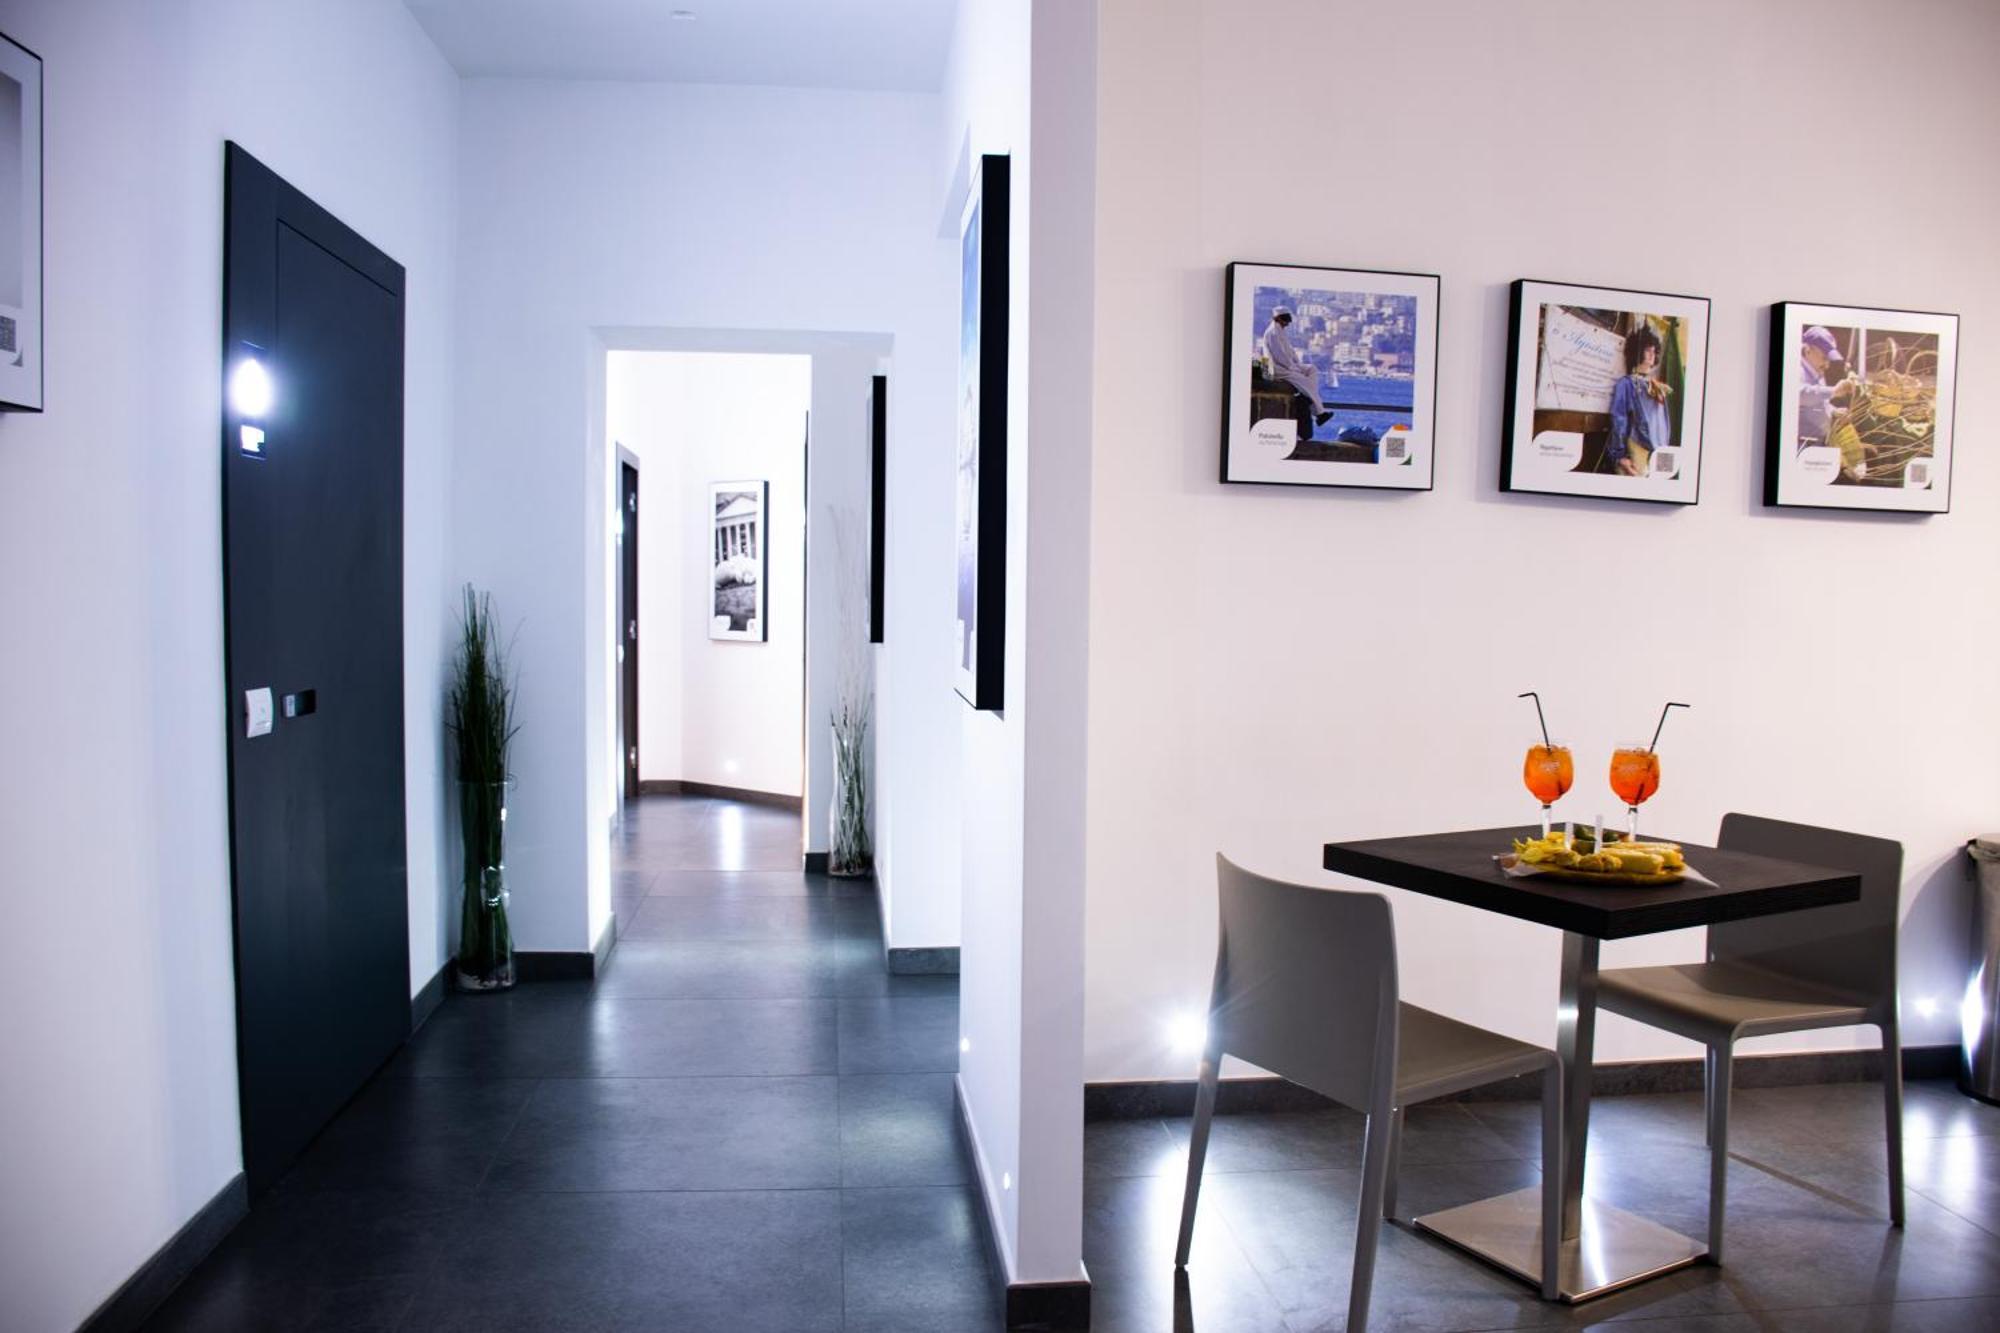 Megaris Luxury Suite Rooms Naples Exterior photo